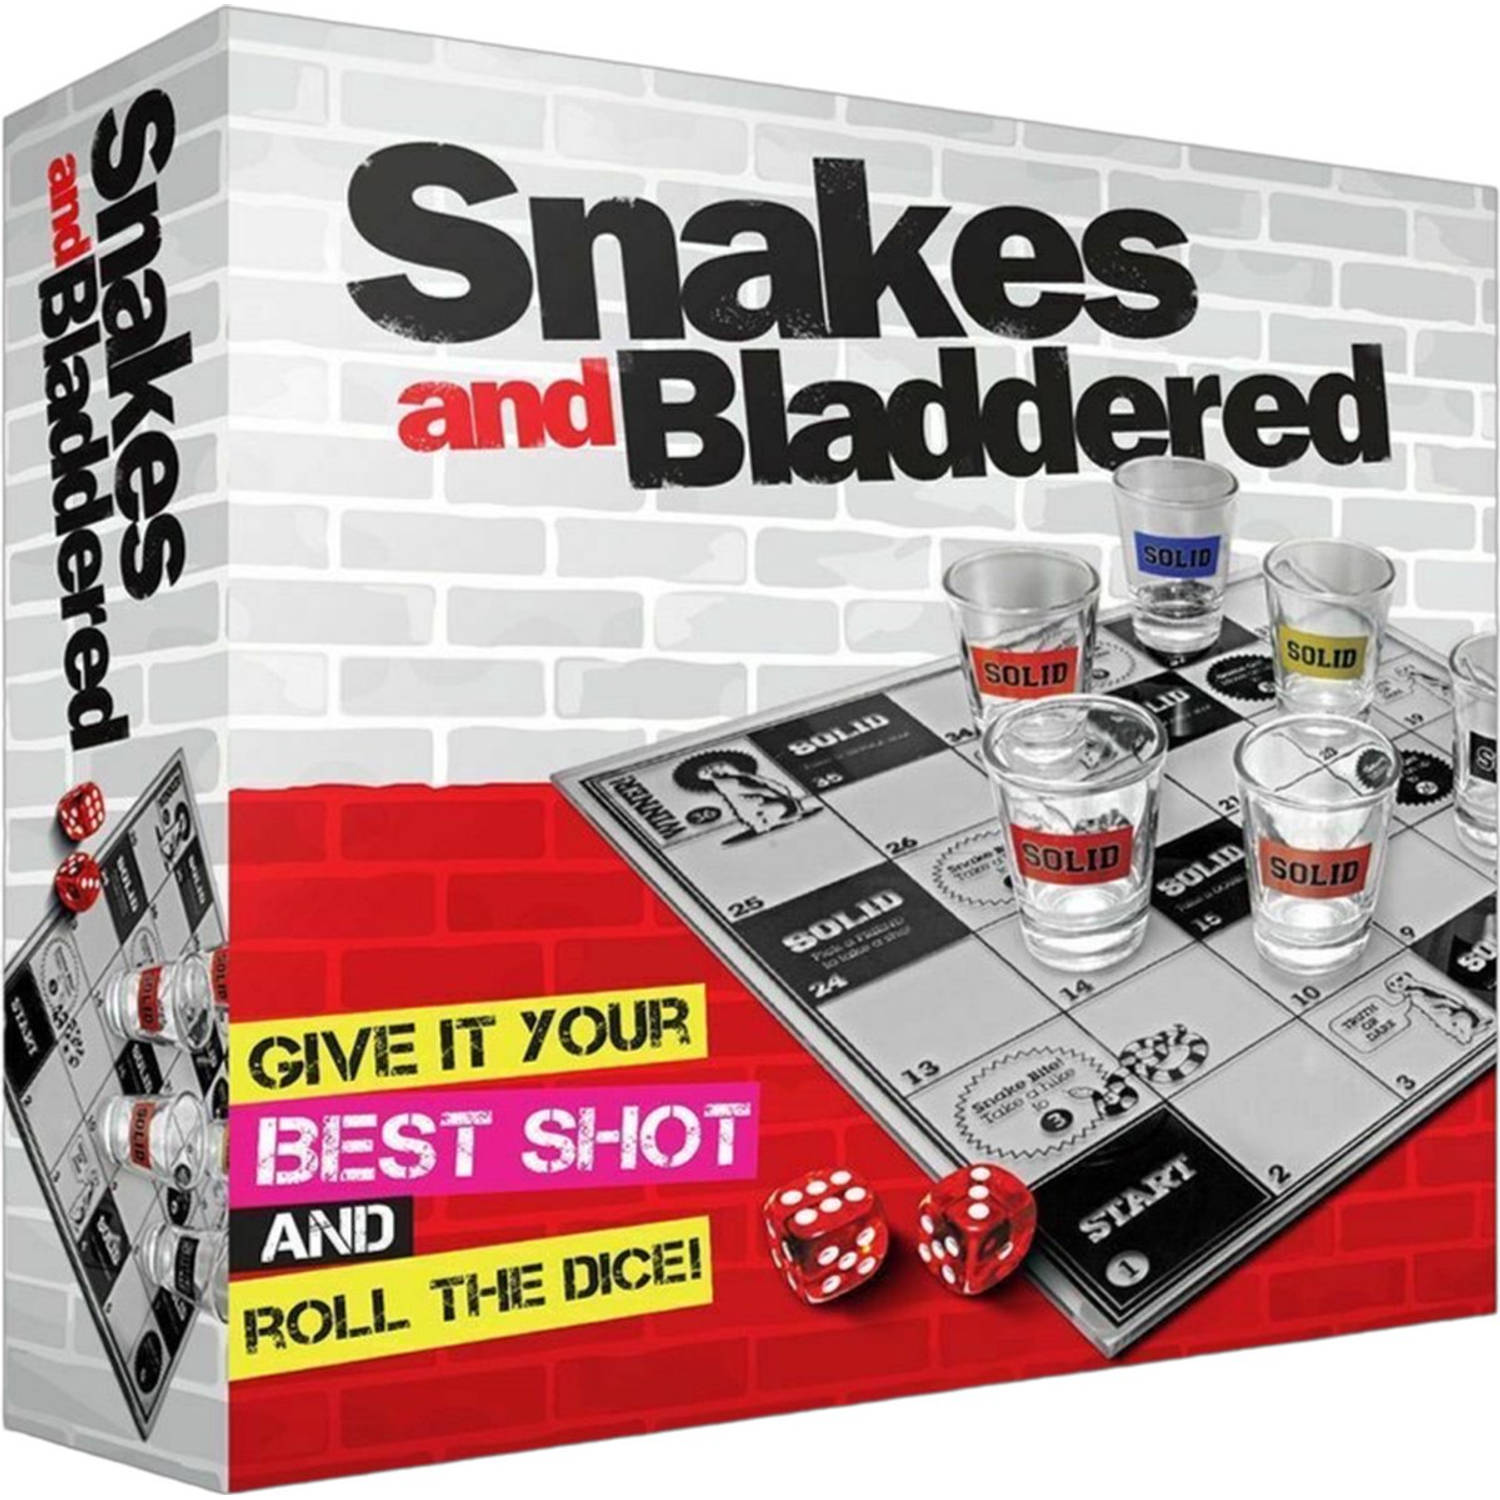 #Winning - Snakes and Bladdered - Drankspel - Shotjes - Dobbelen